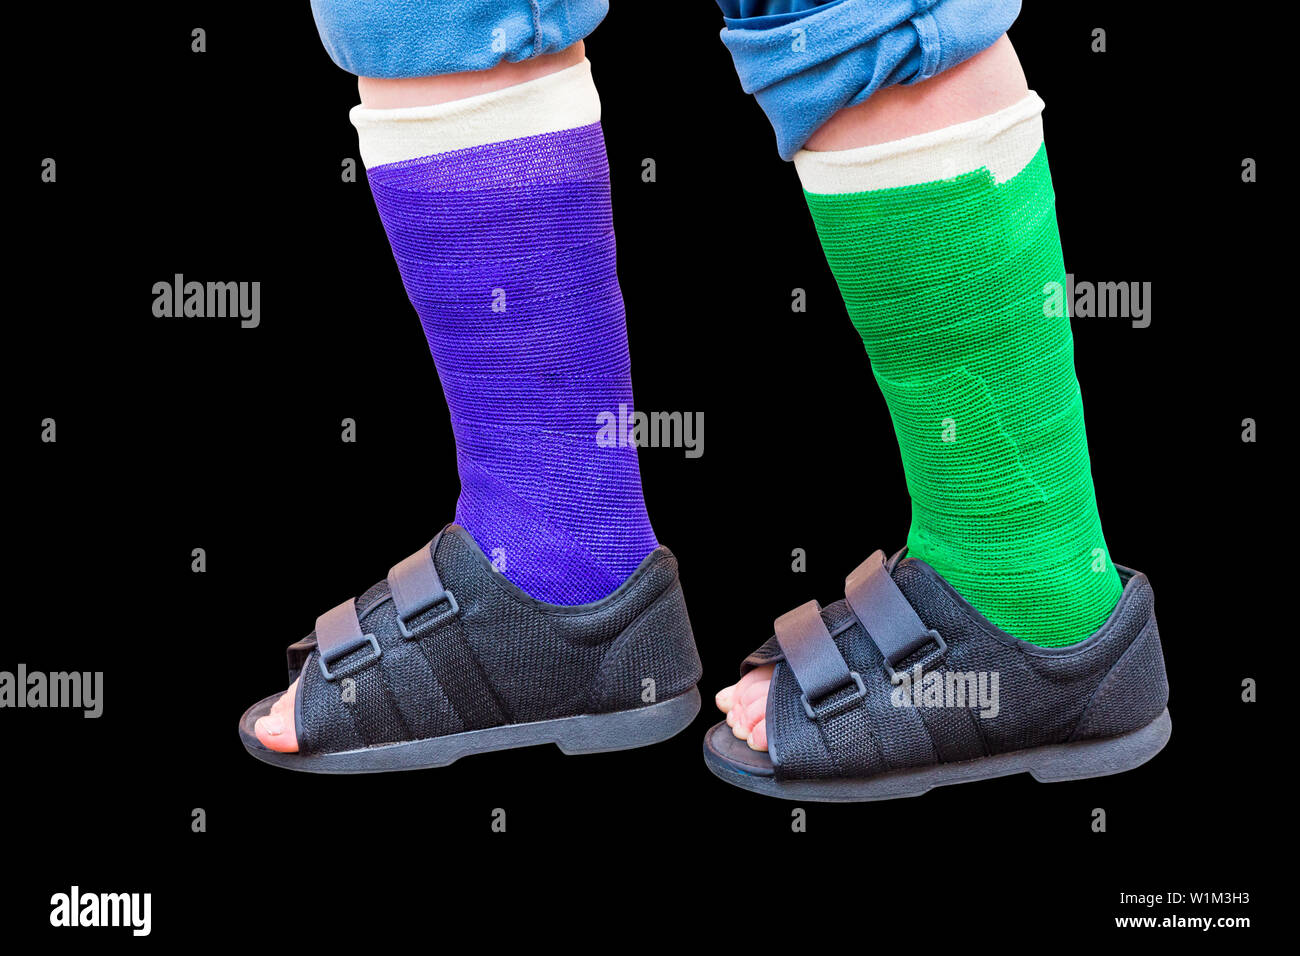 Deux jambes de gypse coloré avec des chaussures permanent isolé sur fond noir Banque D'Images